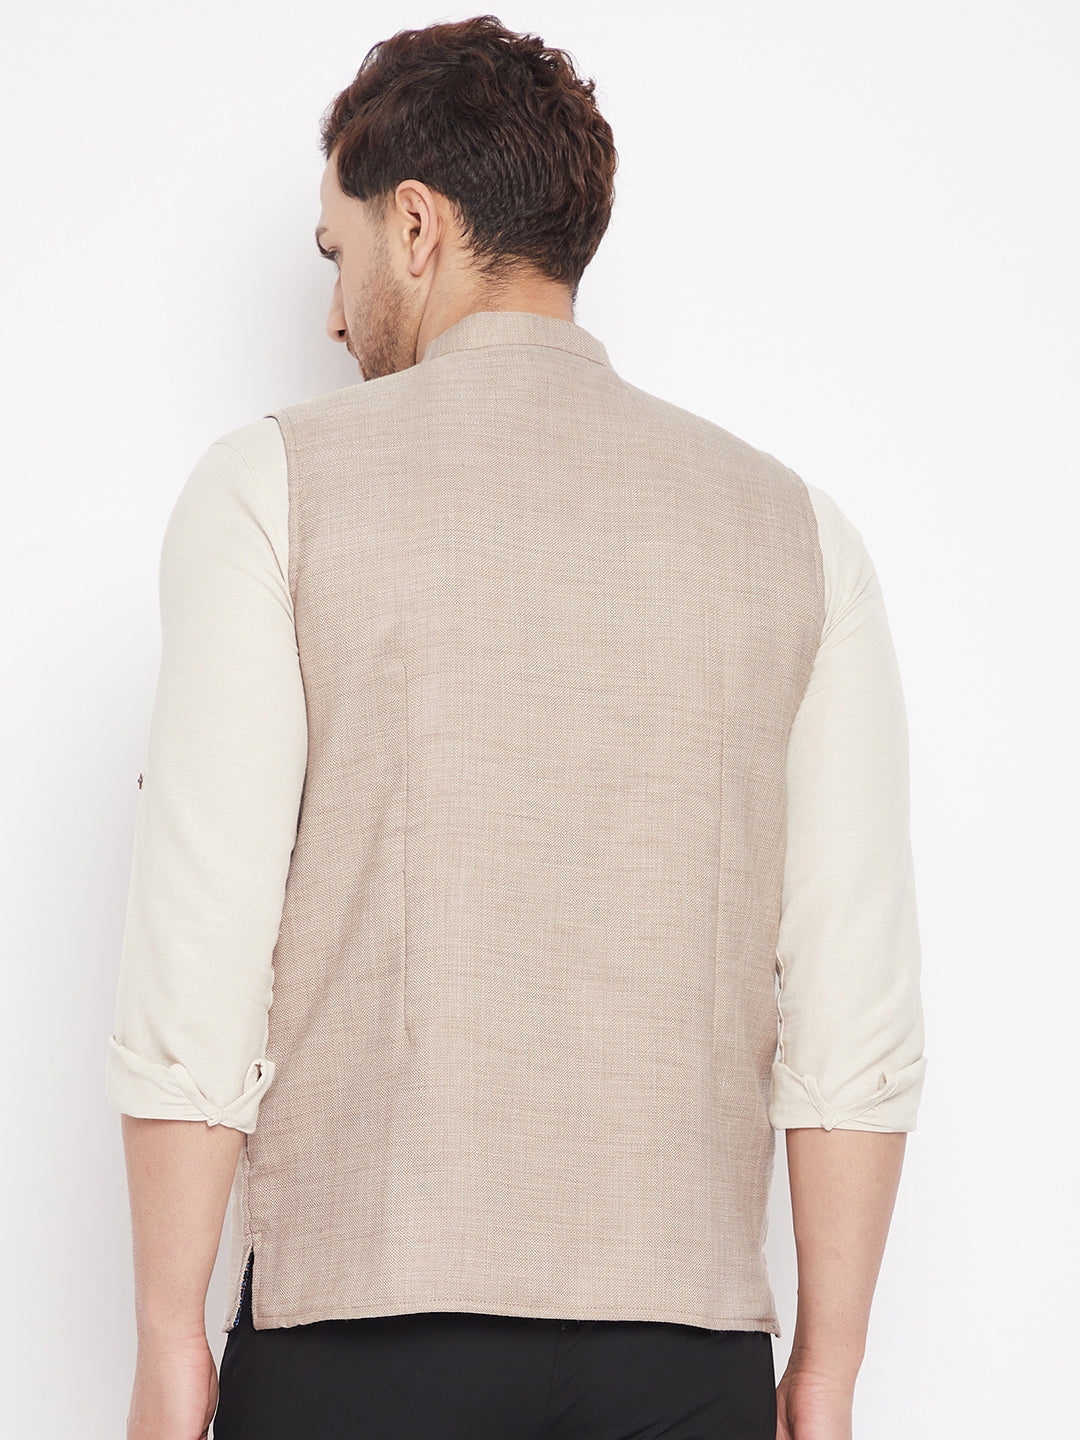 Men's Cream Color Nehru Jacket-Contrast Lining-Inbuilt Pocket Square - Even Apparels